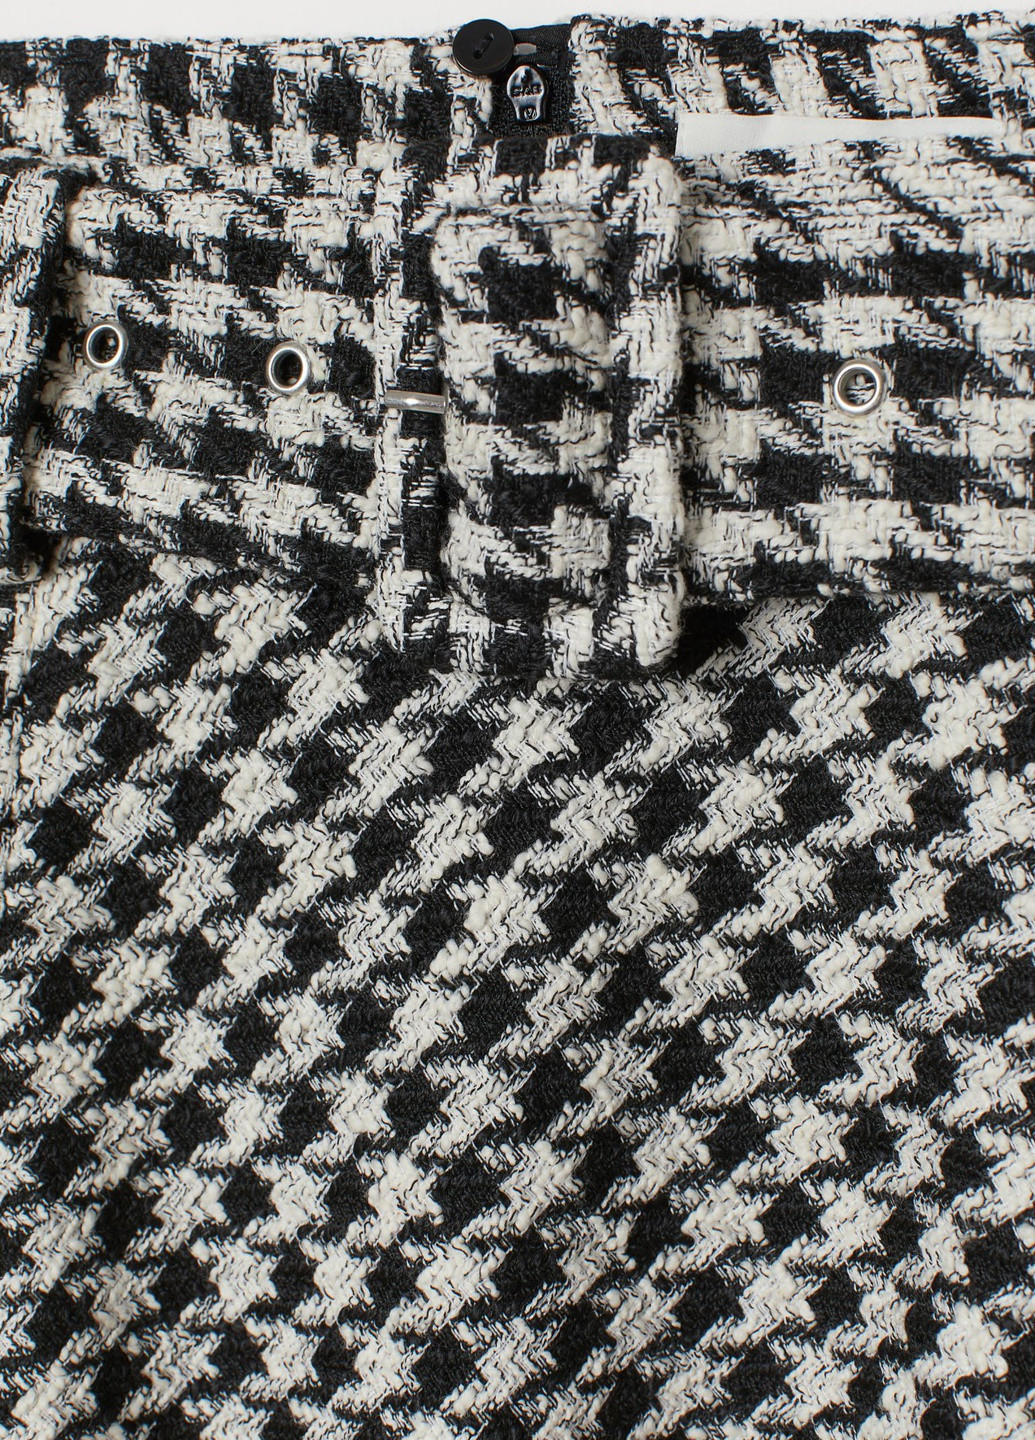 Черно-белая с узором гусиная лапка юбка H&M